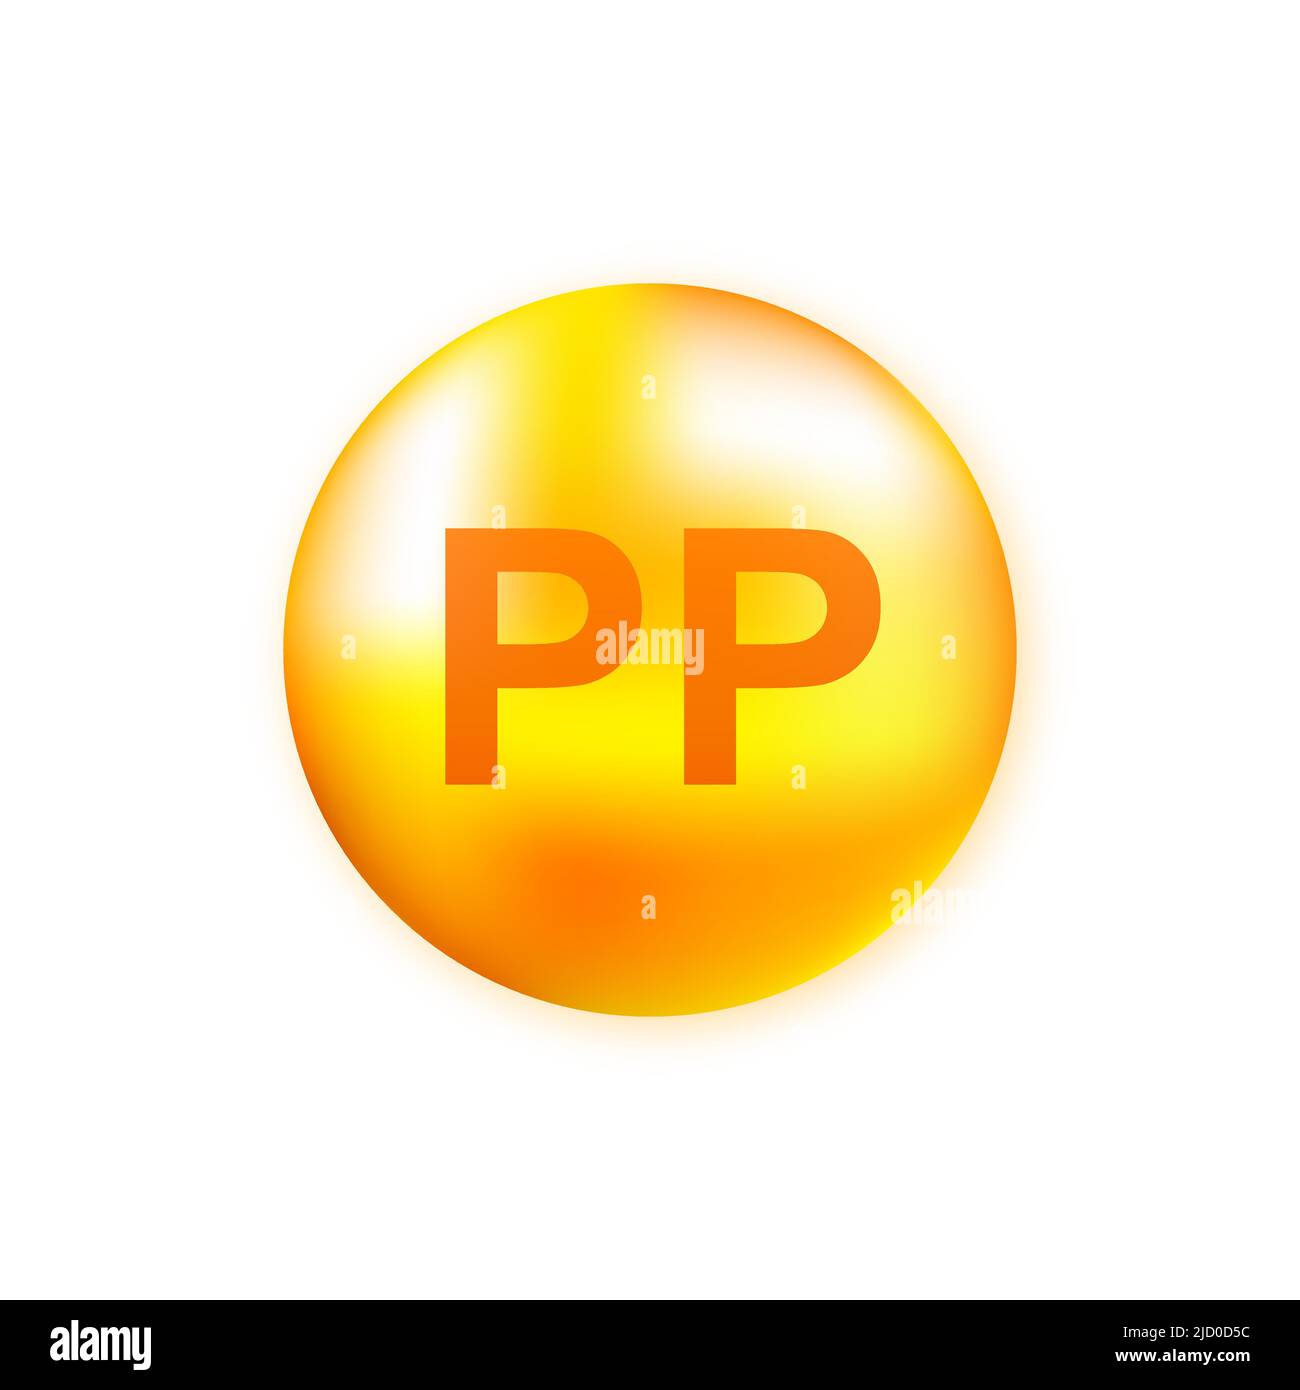 Vitaminkomplex PP mit realistischem Tropfen auf grauem Hintergrund. Partikel von Vitaminen in der Mitte. Vektorgrafik. Stock Vektor